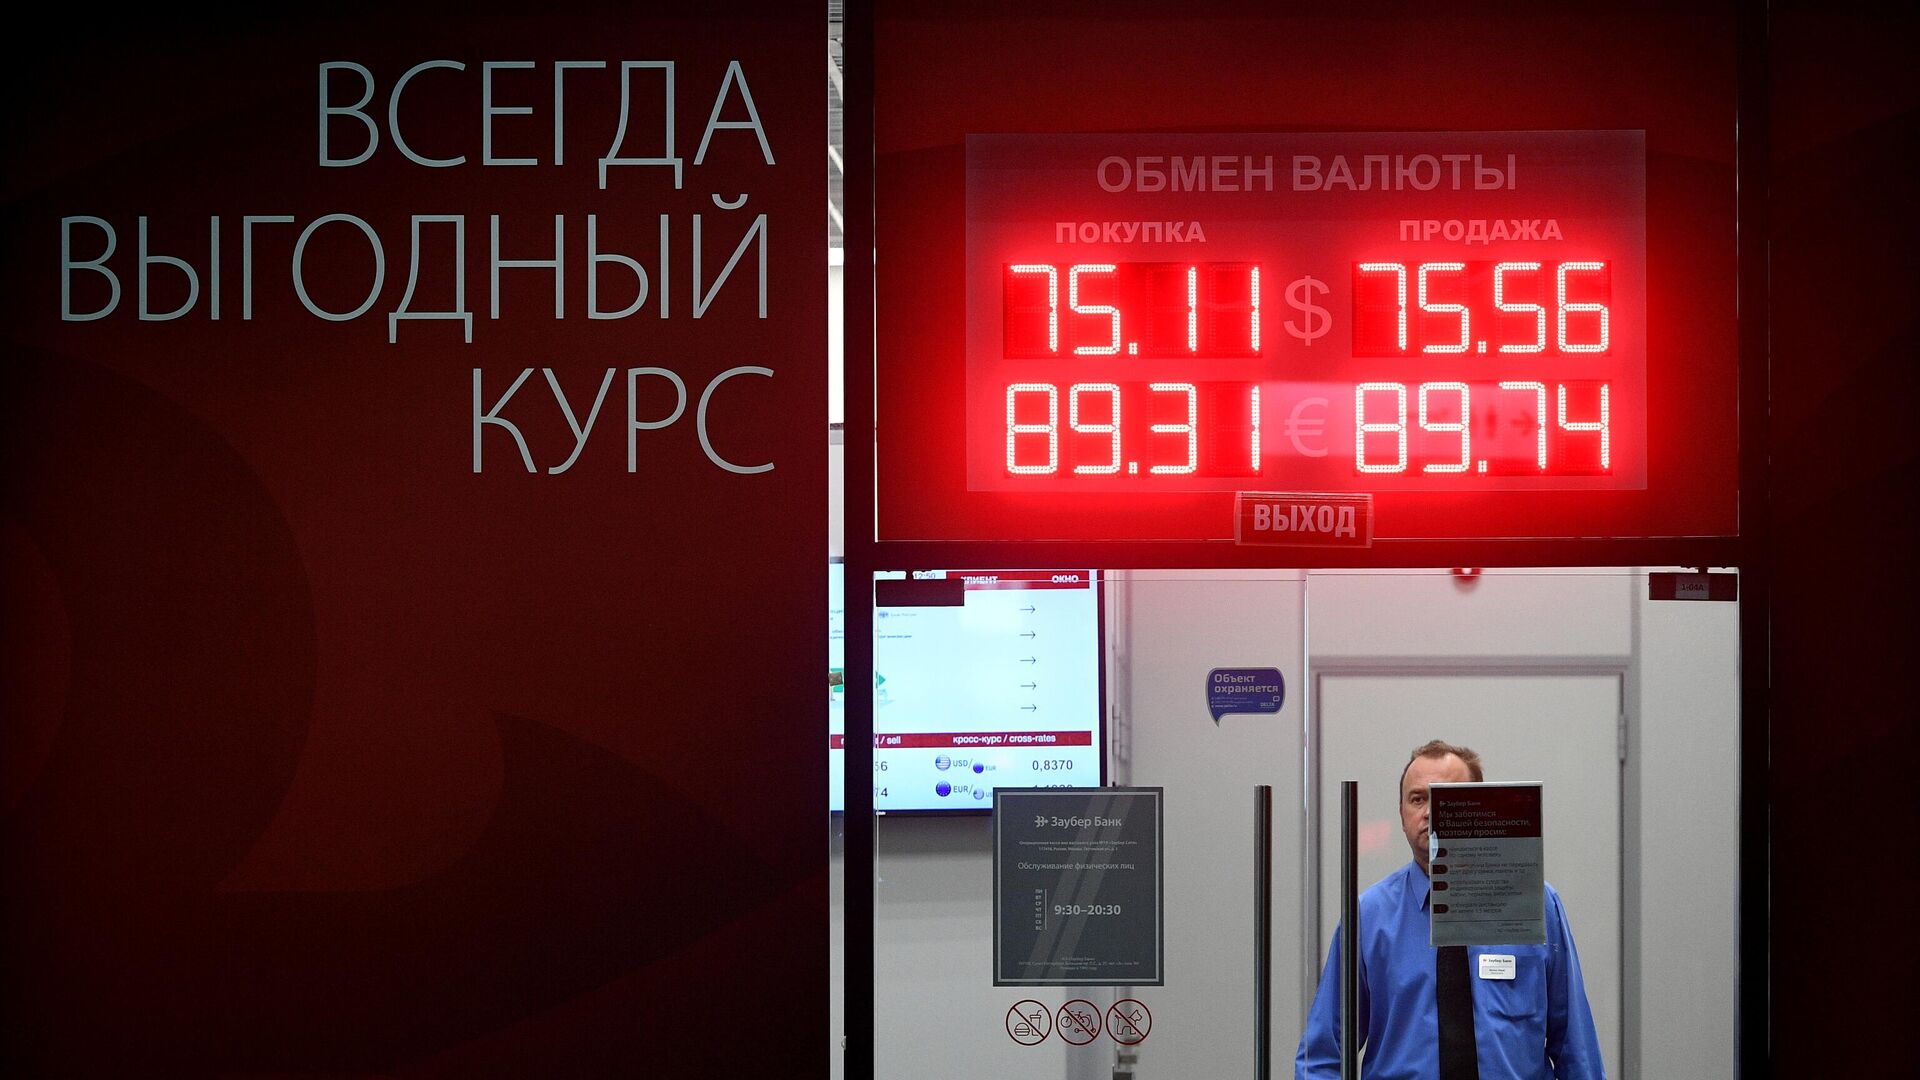 Обмен валюты в москве сегодня адрес ethereum miner for linux